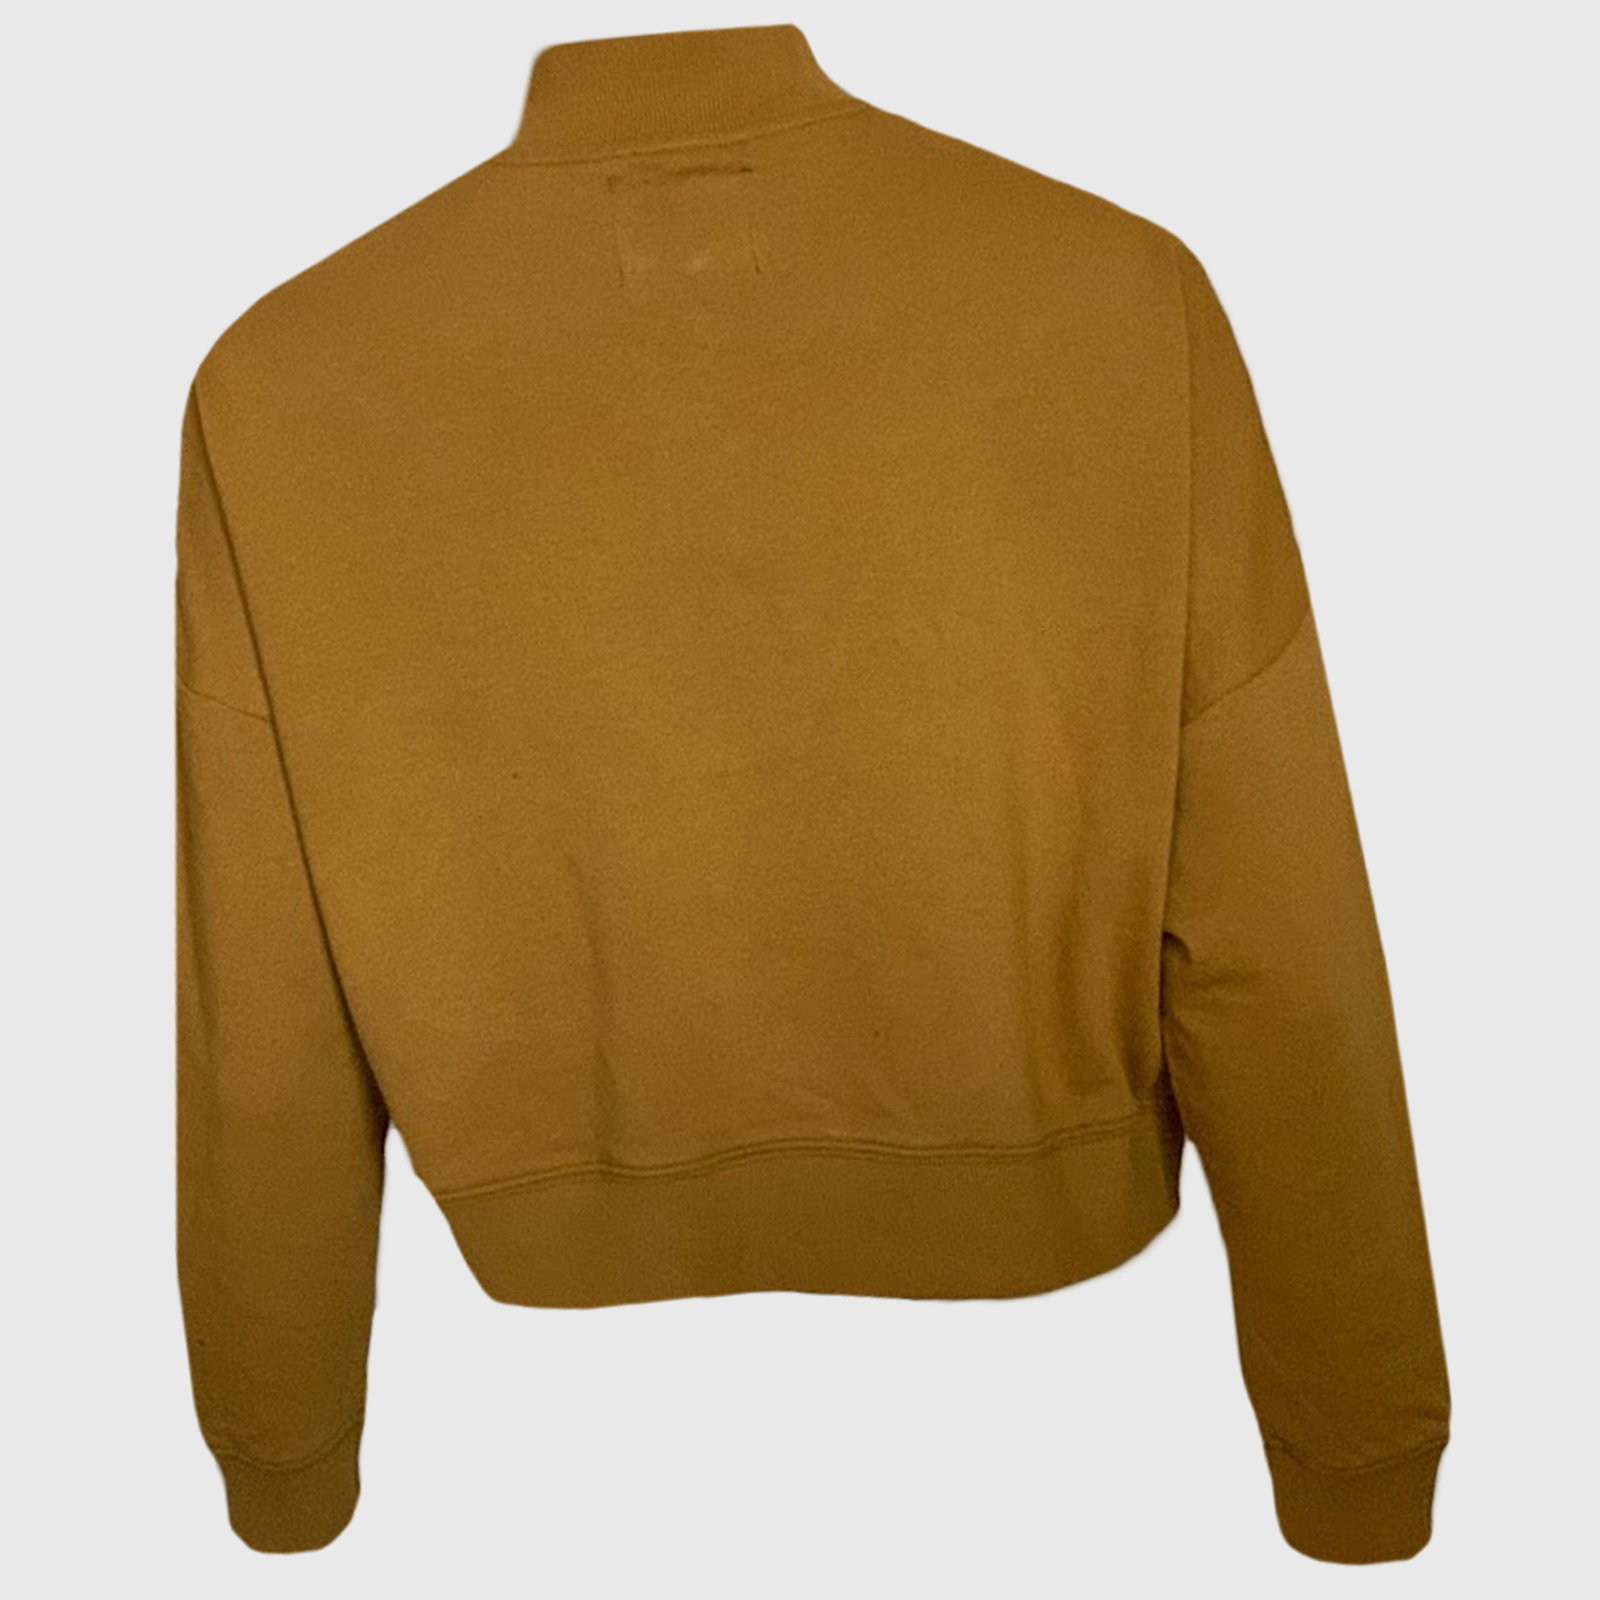 Купить в интернет магазине женский свитер с замочком на горловине 